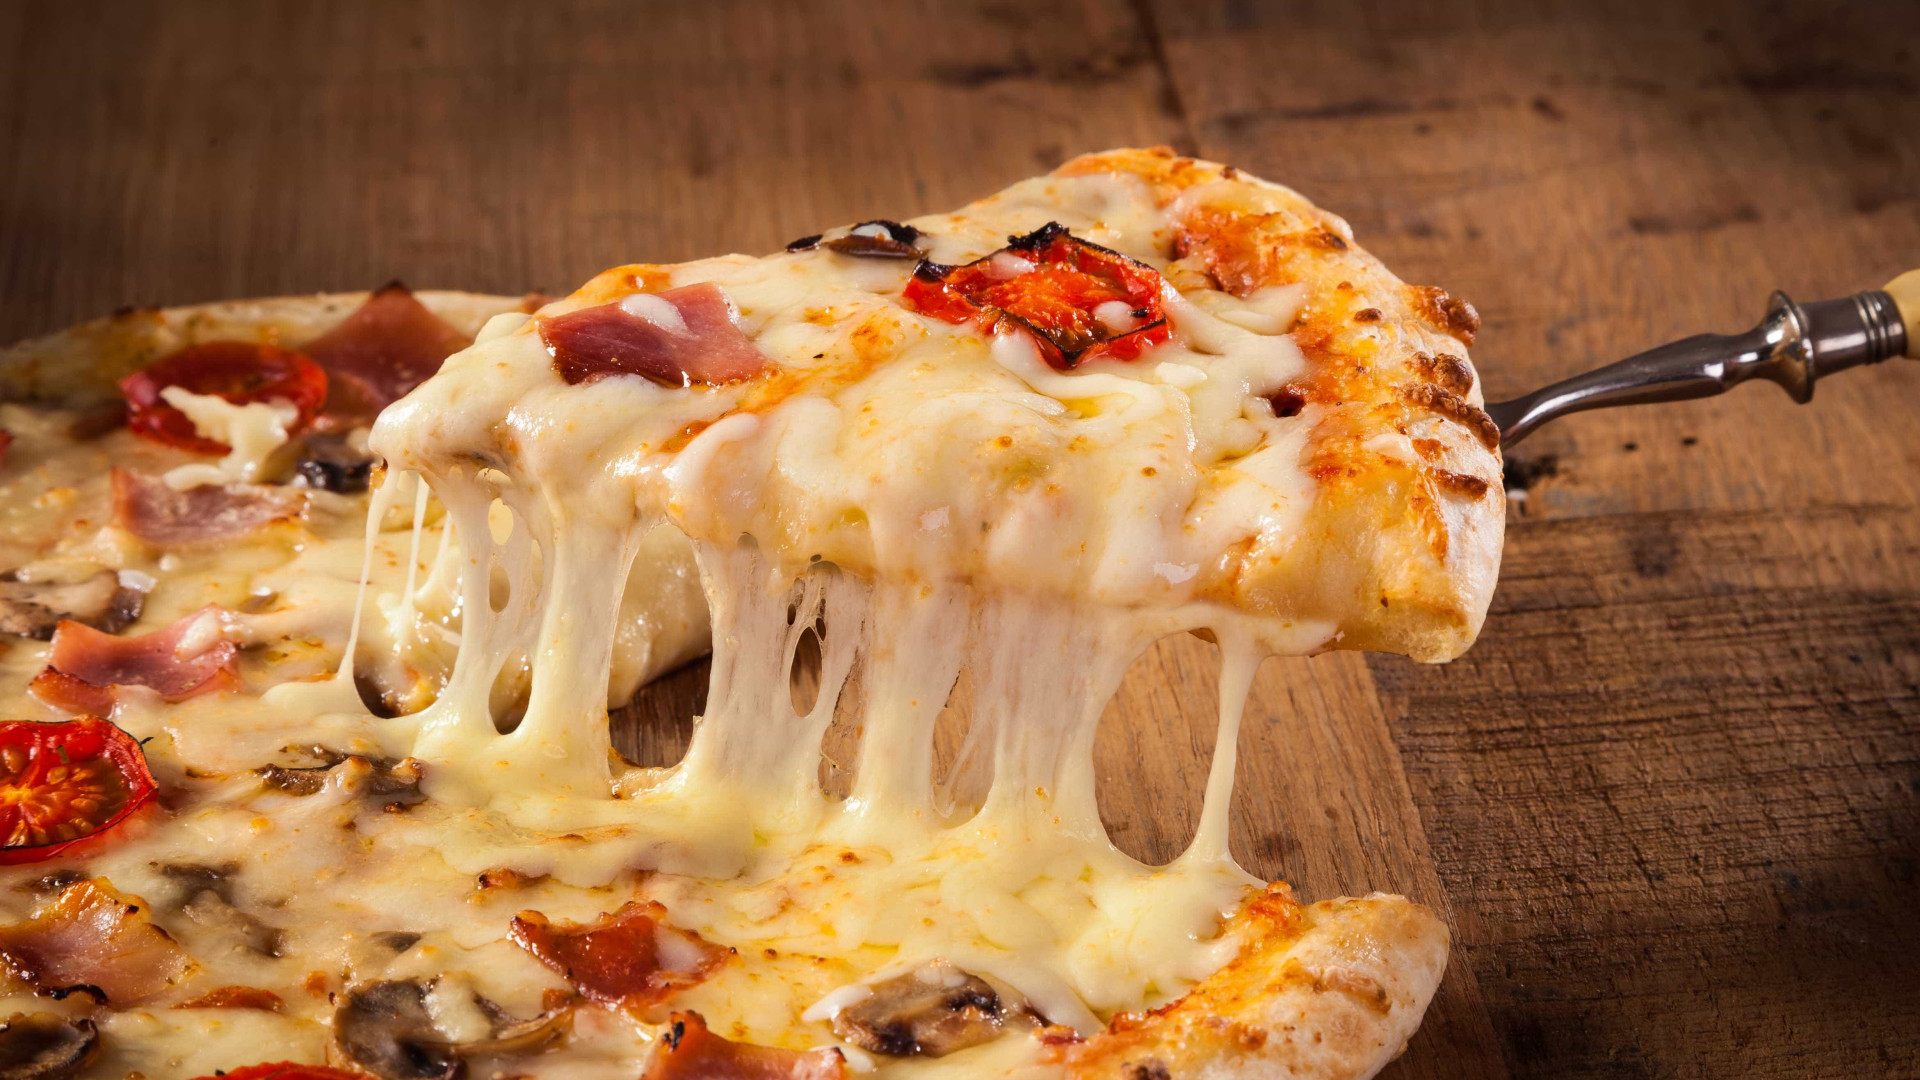 Evento gastronômico transformará
Roma em 'Cidade da Pizza'